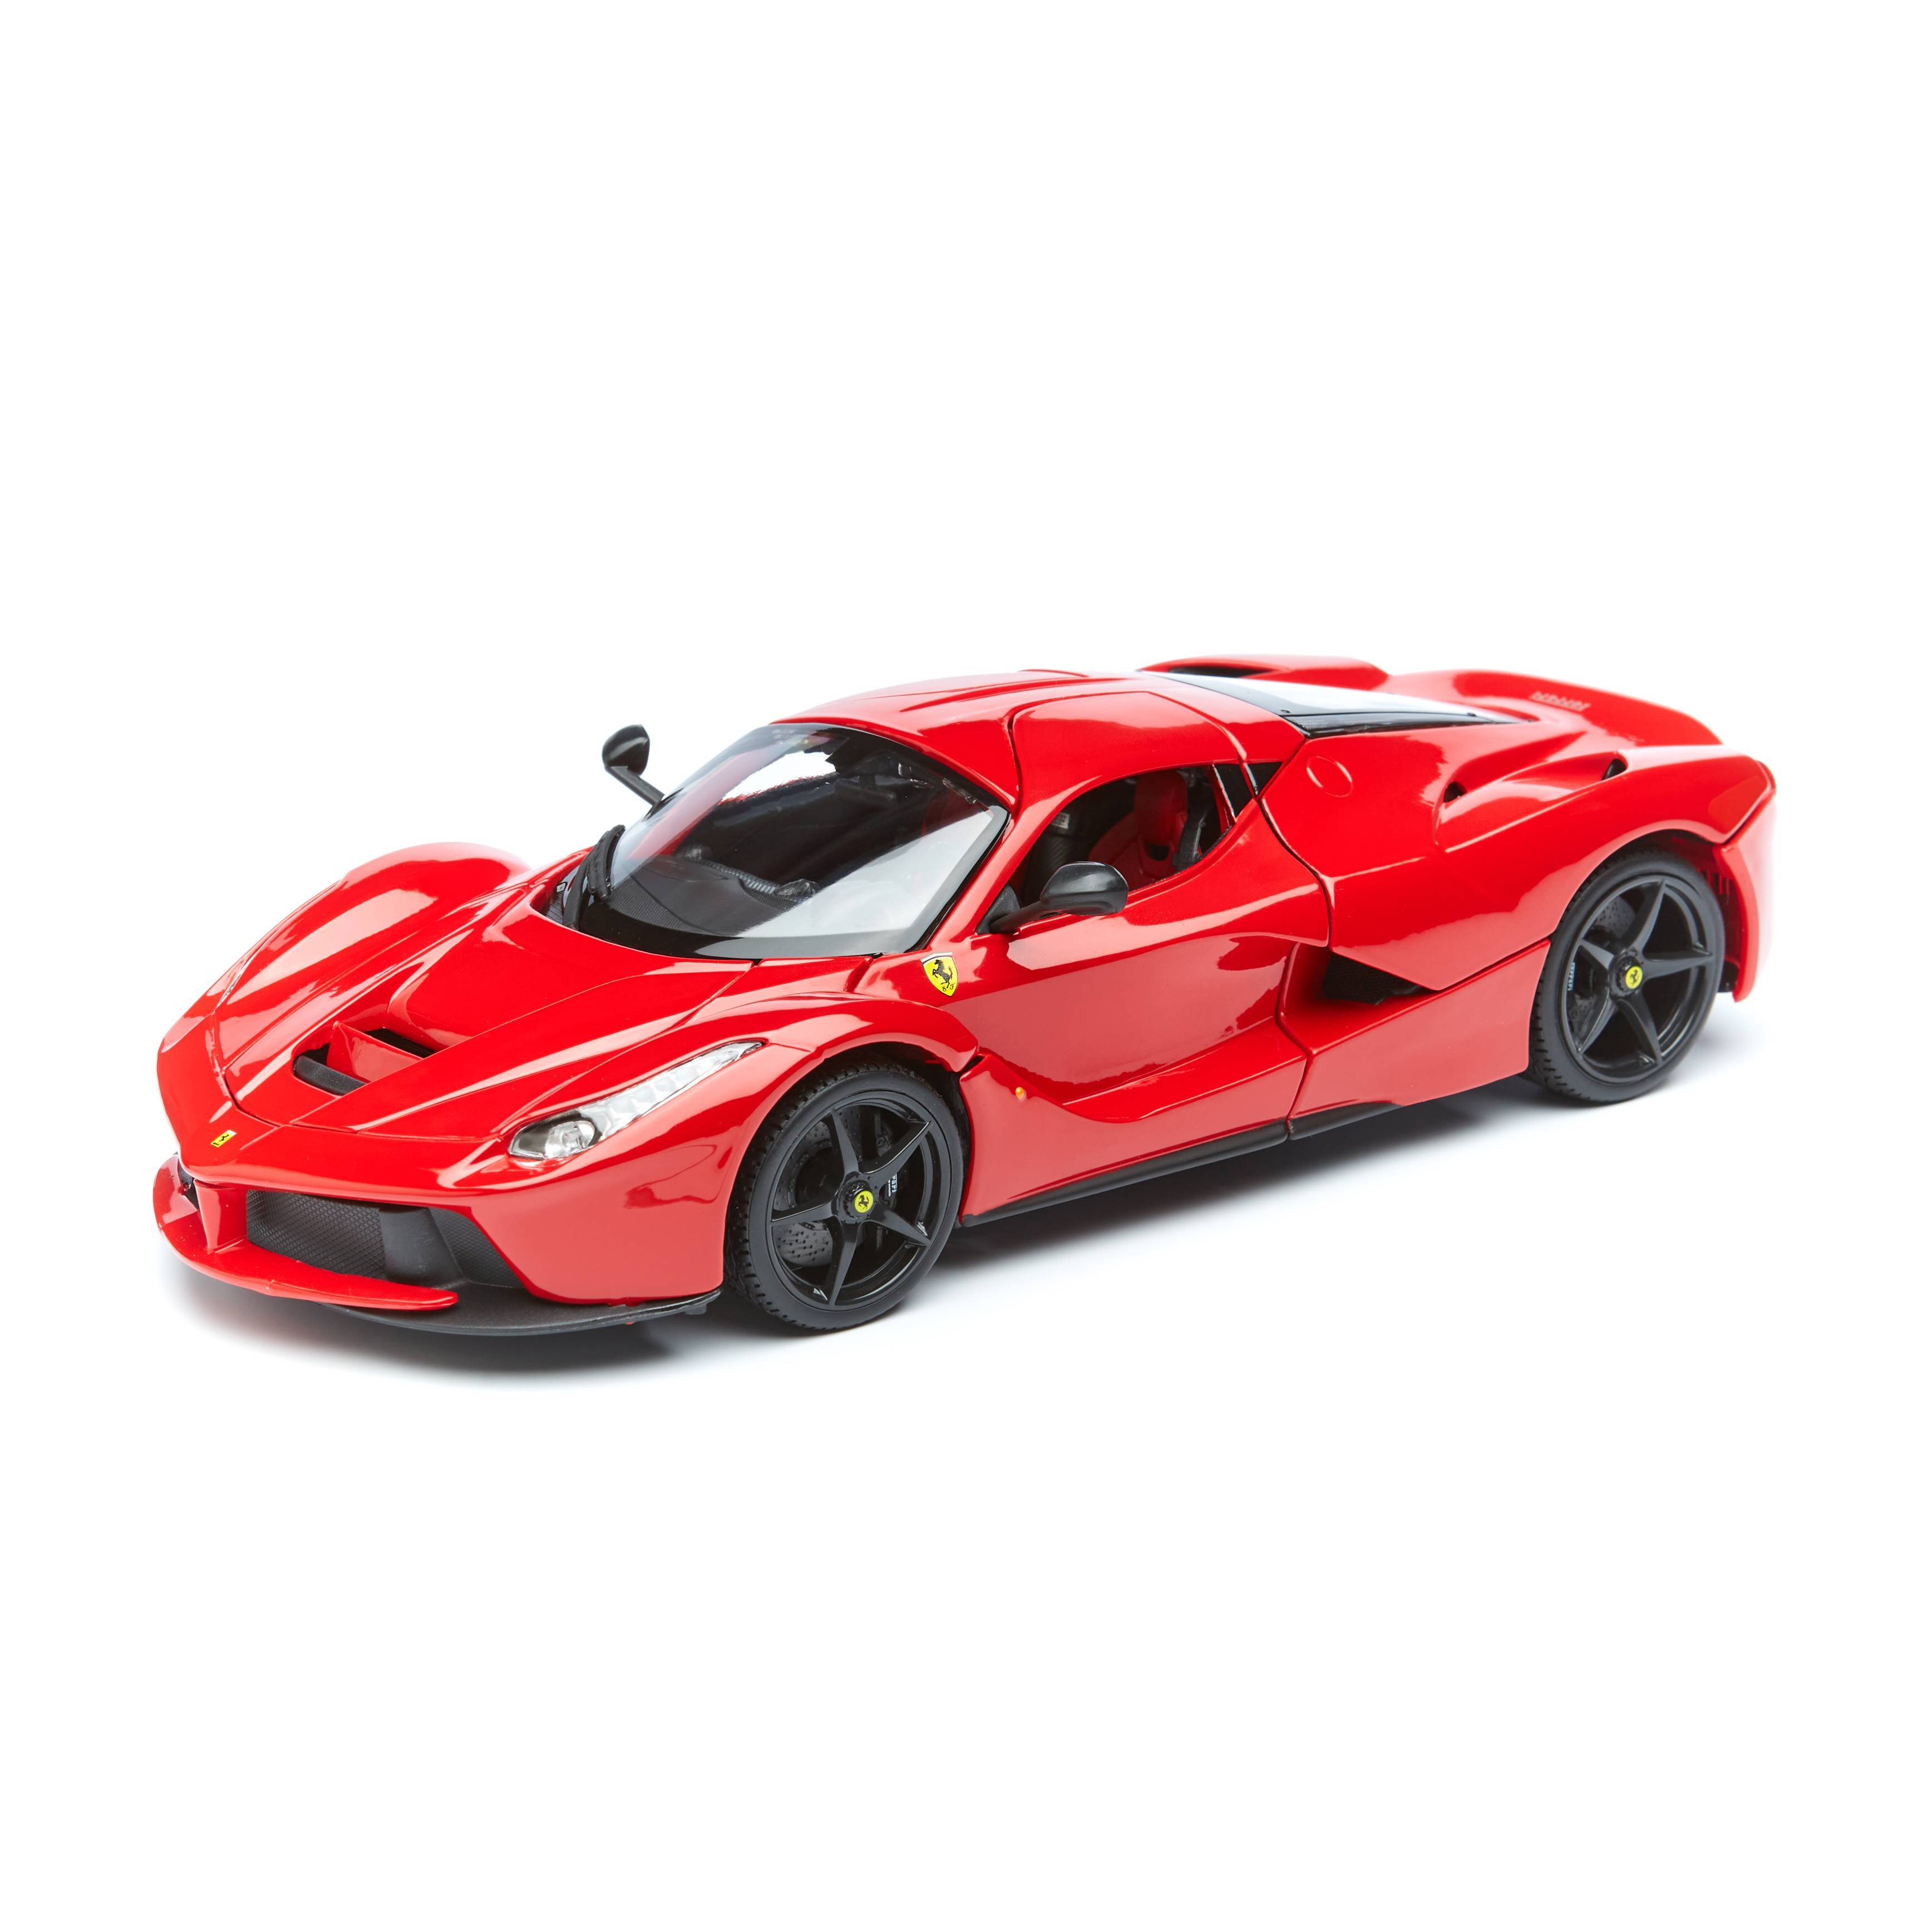 Bburago Коллекционная Машинка Феррари 1:18 Ferrari LaFerrari, 18-16001, красный автомобиль bburago гоночный перевозчик ferrari красный 18 31202